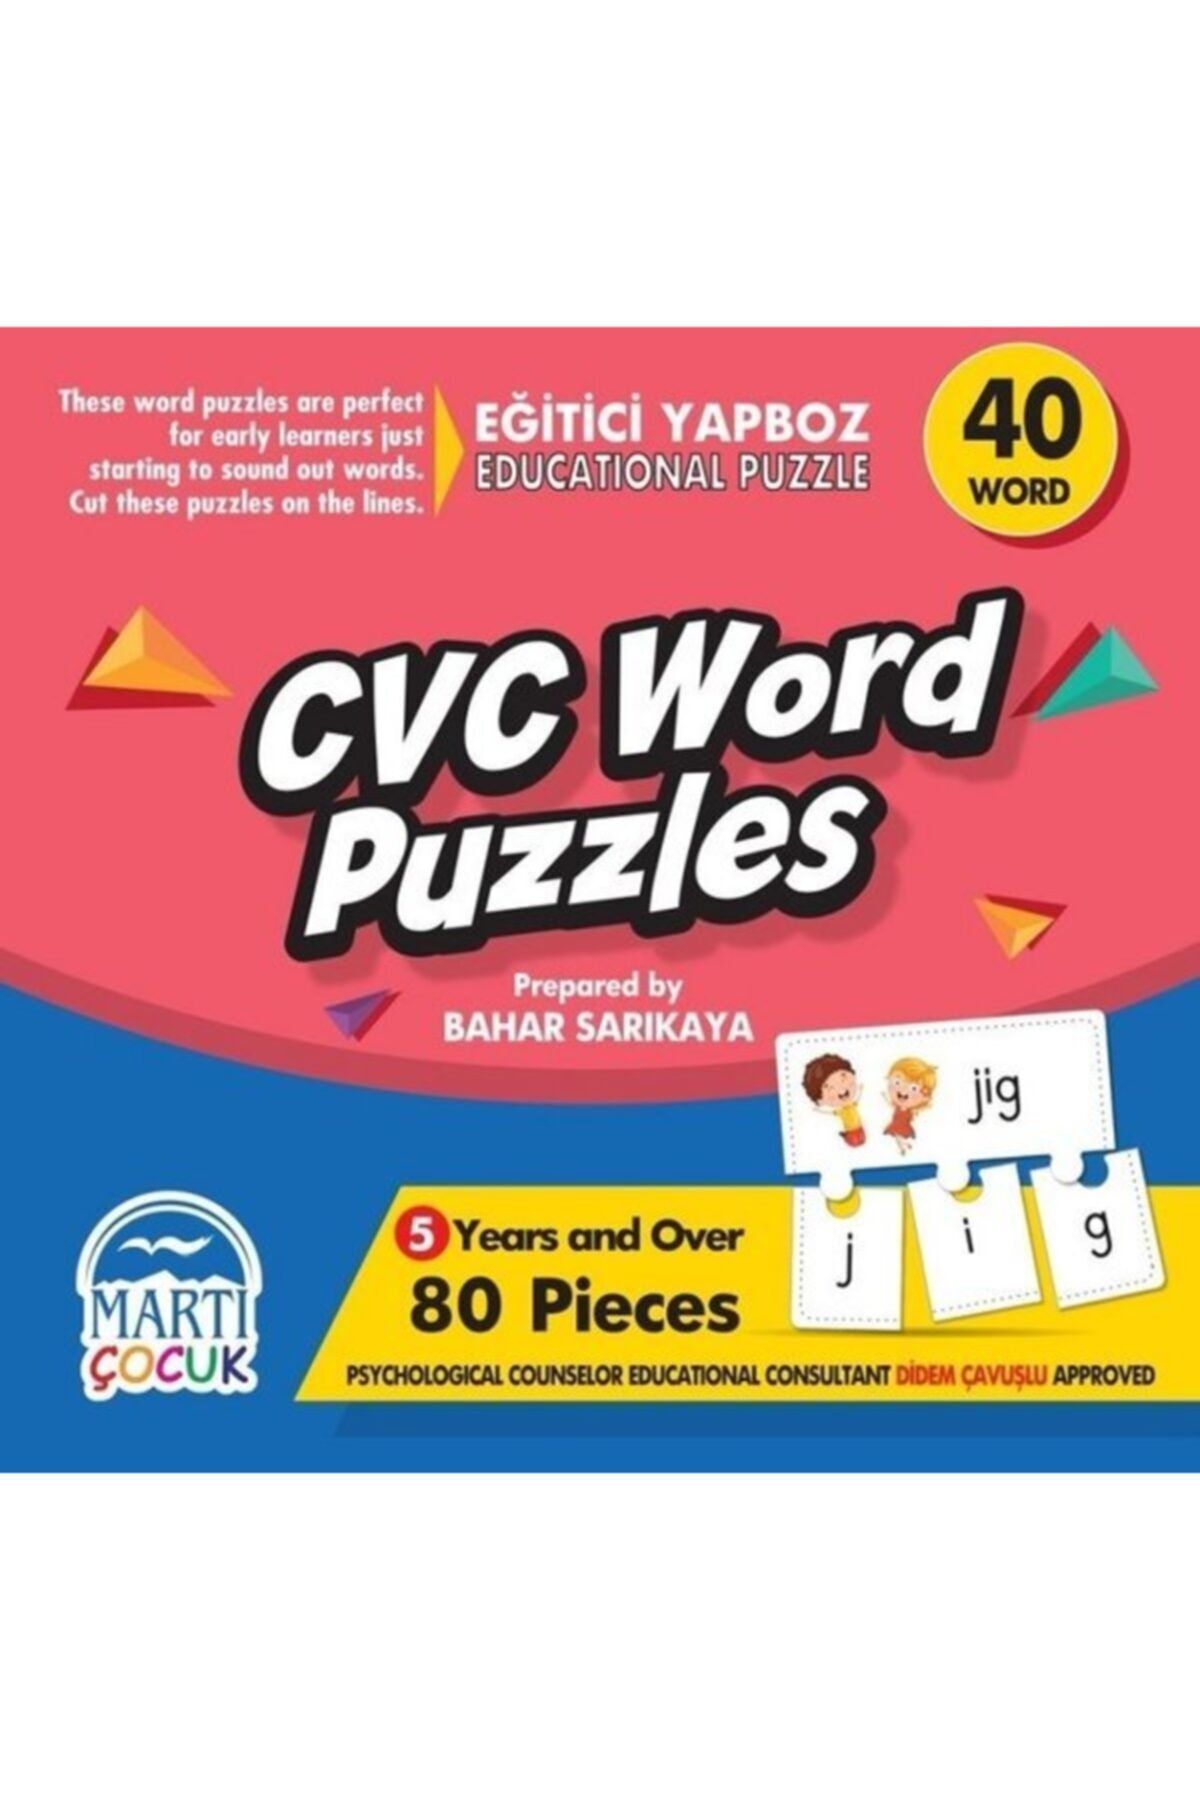 Martı Yayınları Cvc Word Puzzles - Eğitici Yapboz - Martı Çocuk Yayınları - Bahar Sarıkaya Kitabı